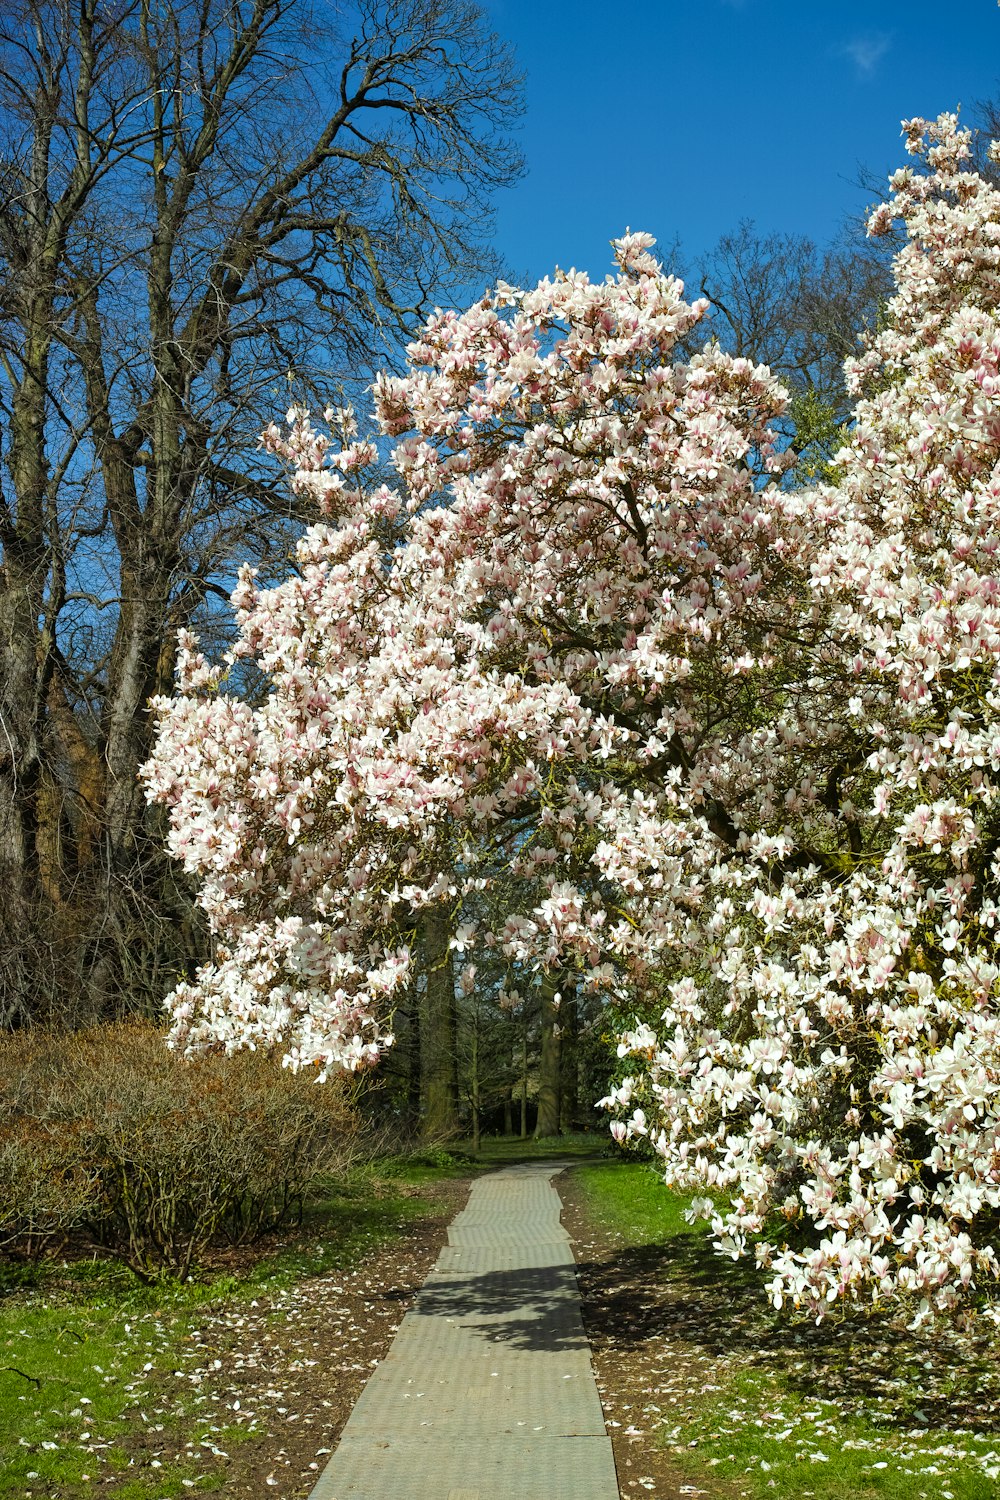 Un camino en un parque bordeado de árboles en flor